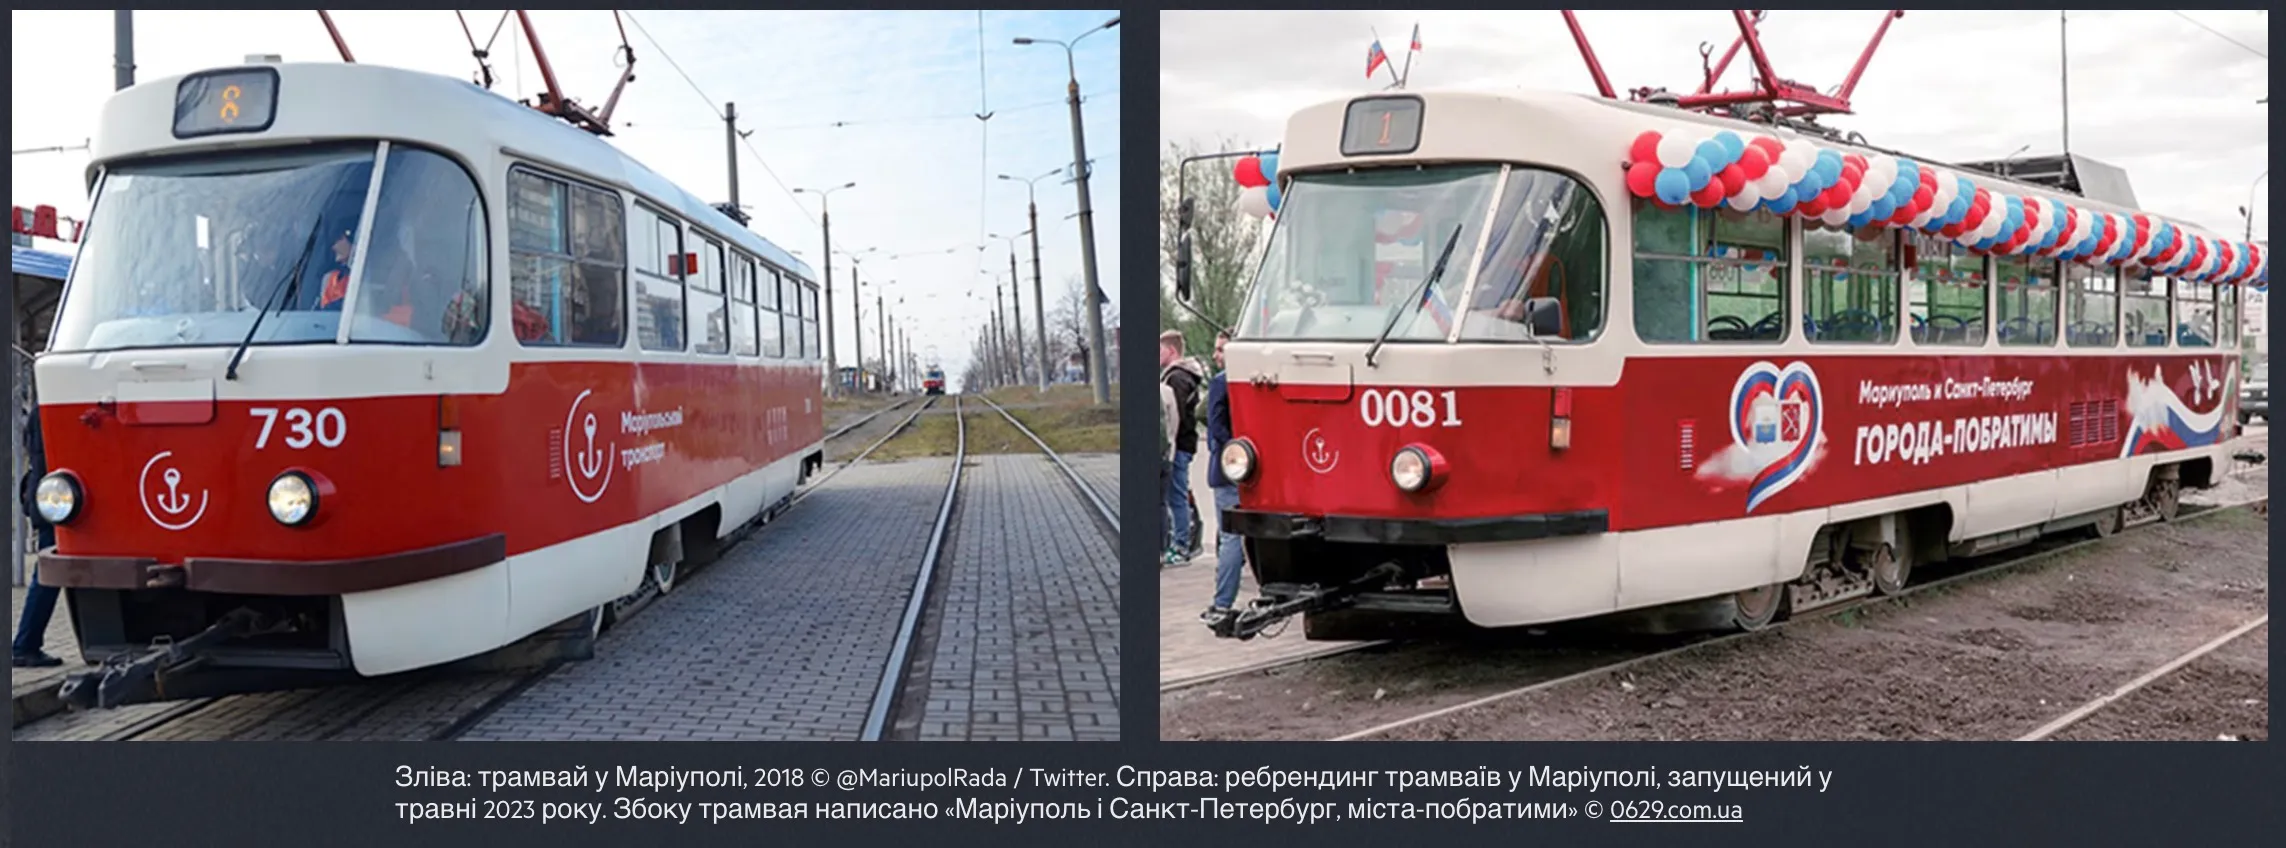 Россияне выдали украинский трамвайчик за свой